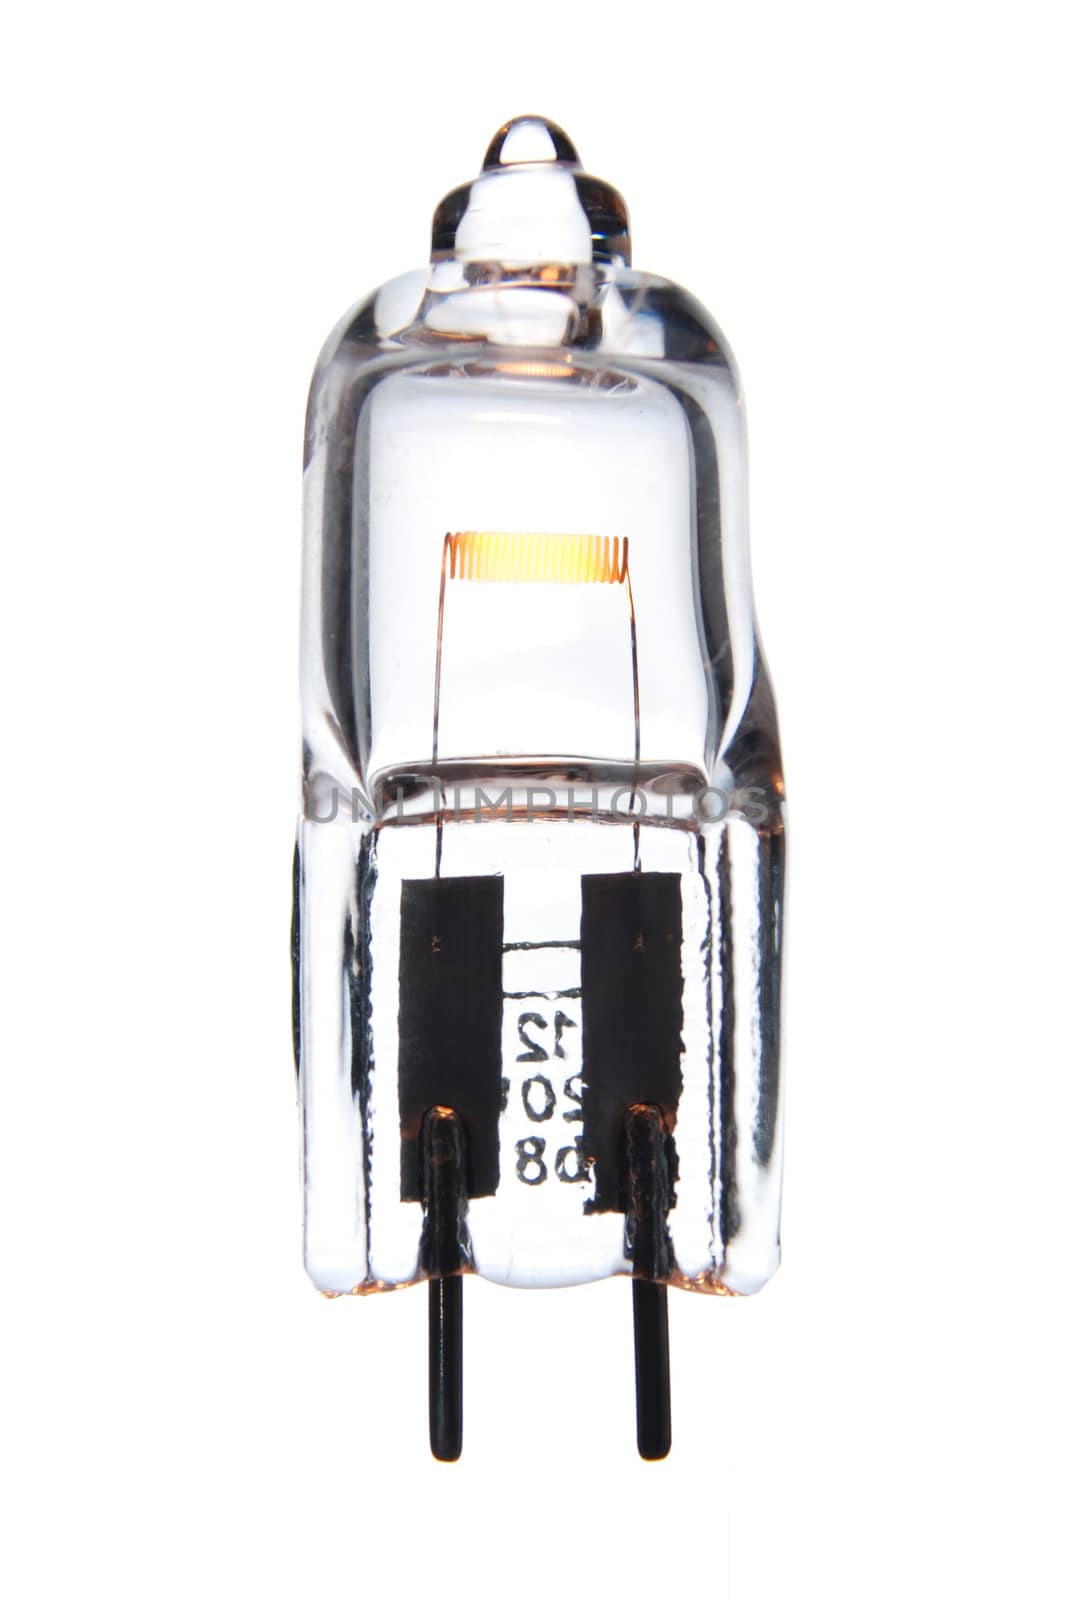 12 V halogen light bulb dimmed to 3 V.